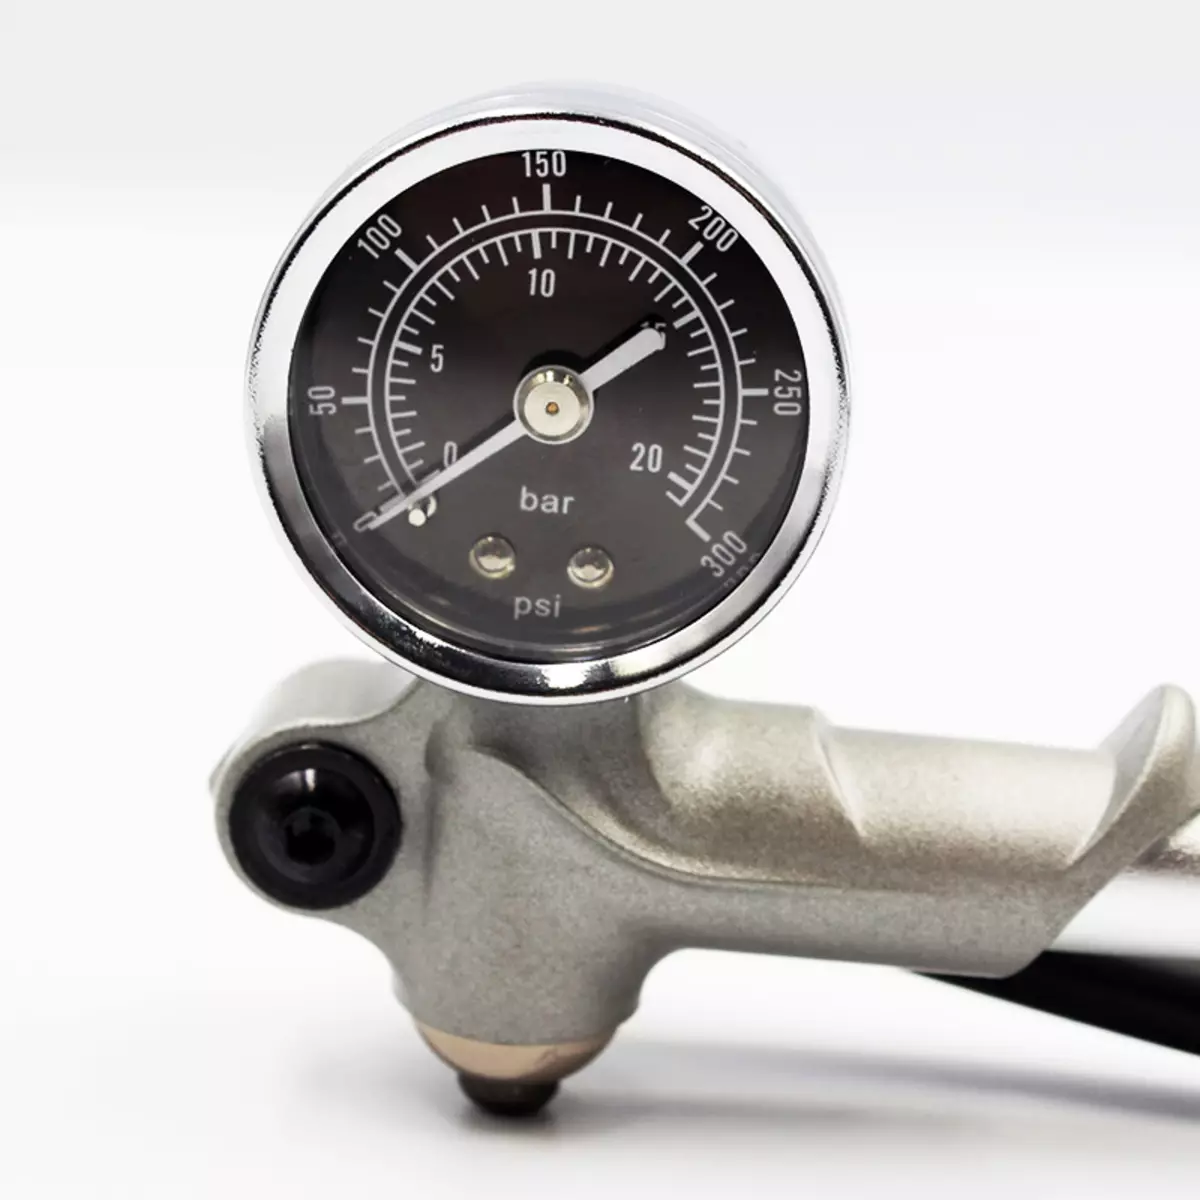 Pompa të presionit të lartë për një biçikletë: Wallers me matës presioni për pompat, amortizuesit dhe modele të tjera të pompave të çiklizmit 8499_5